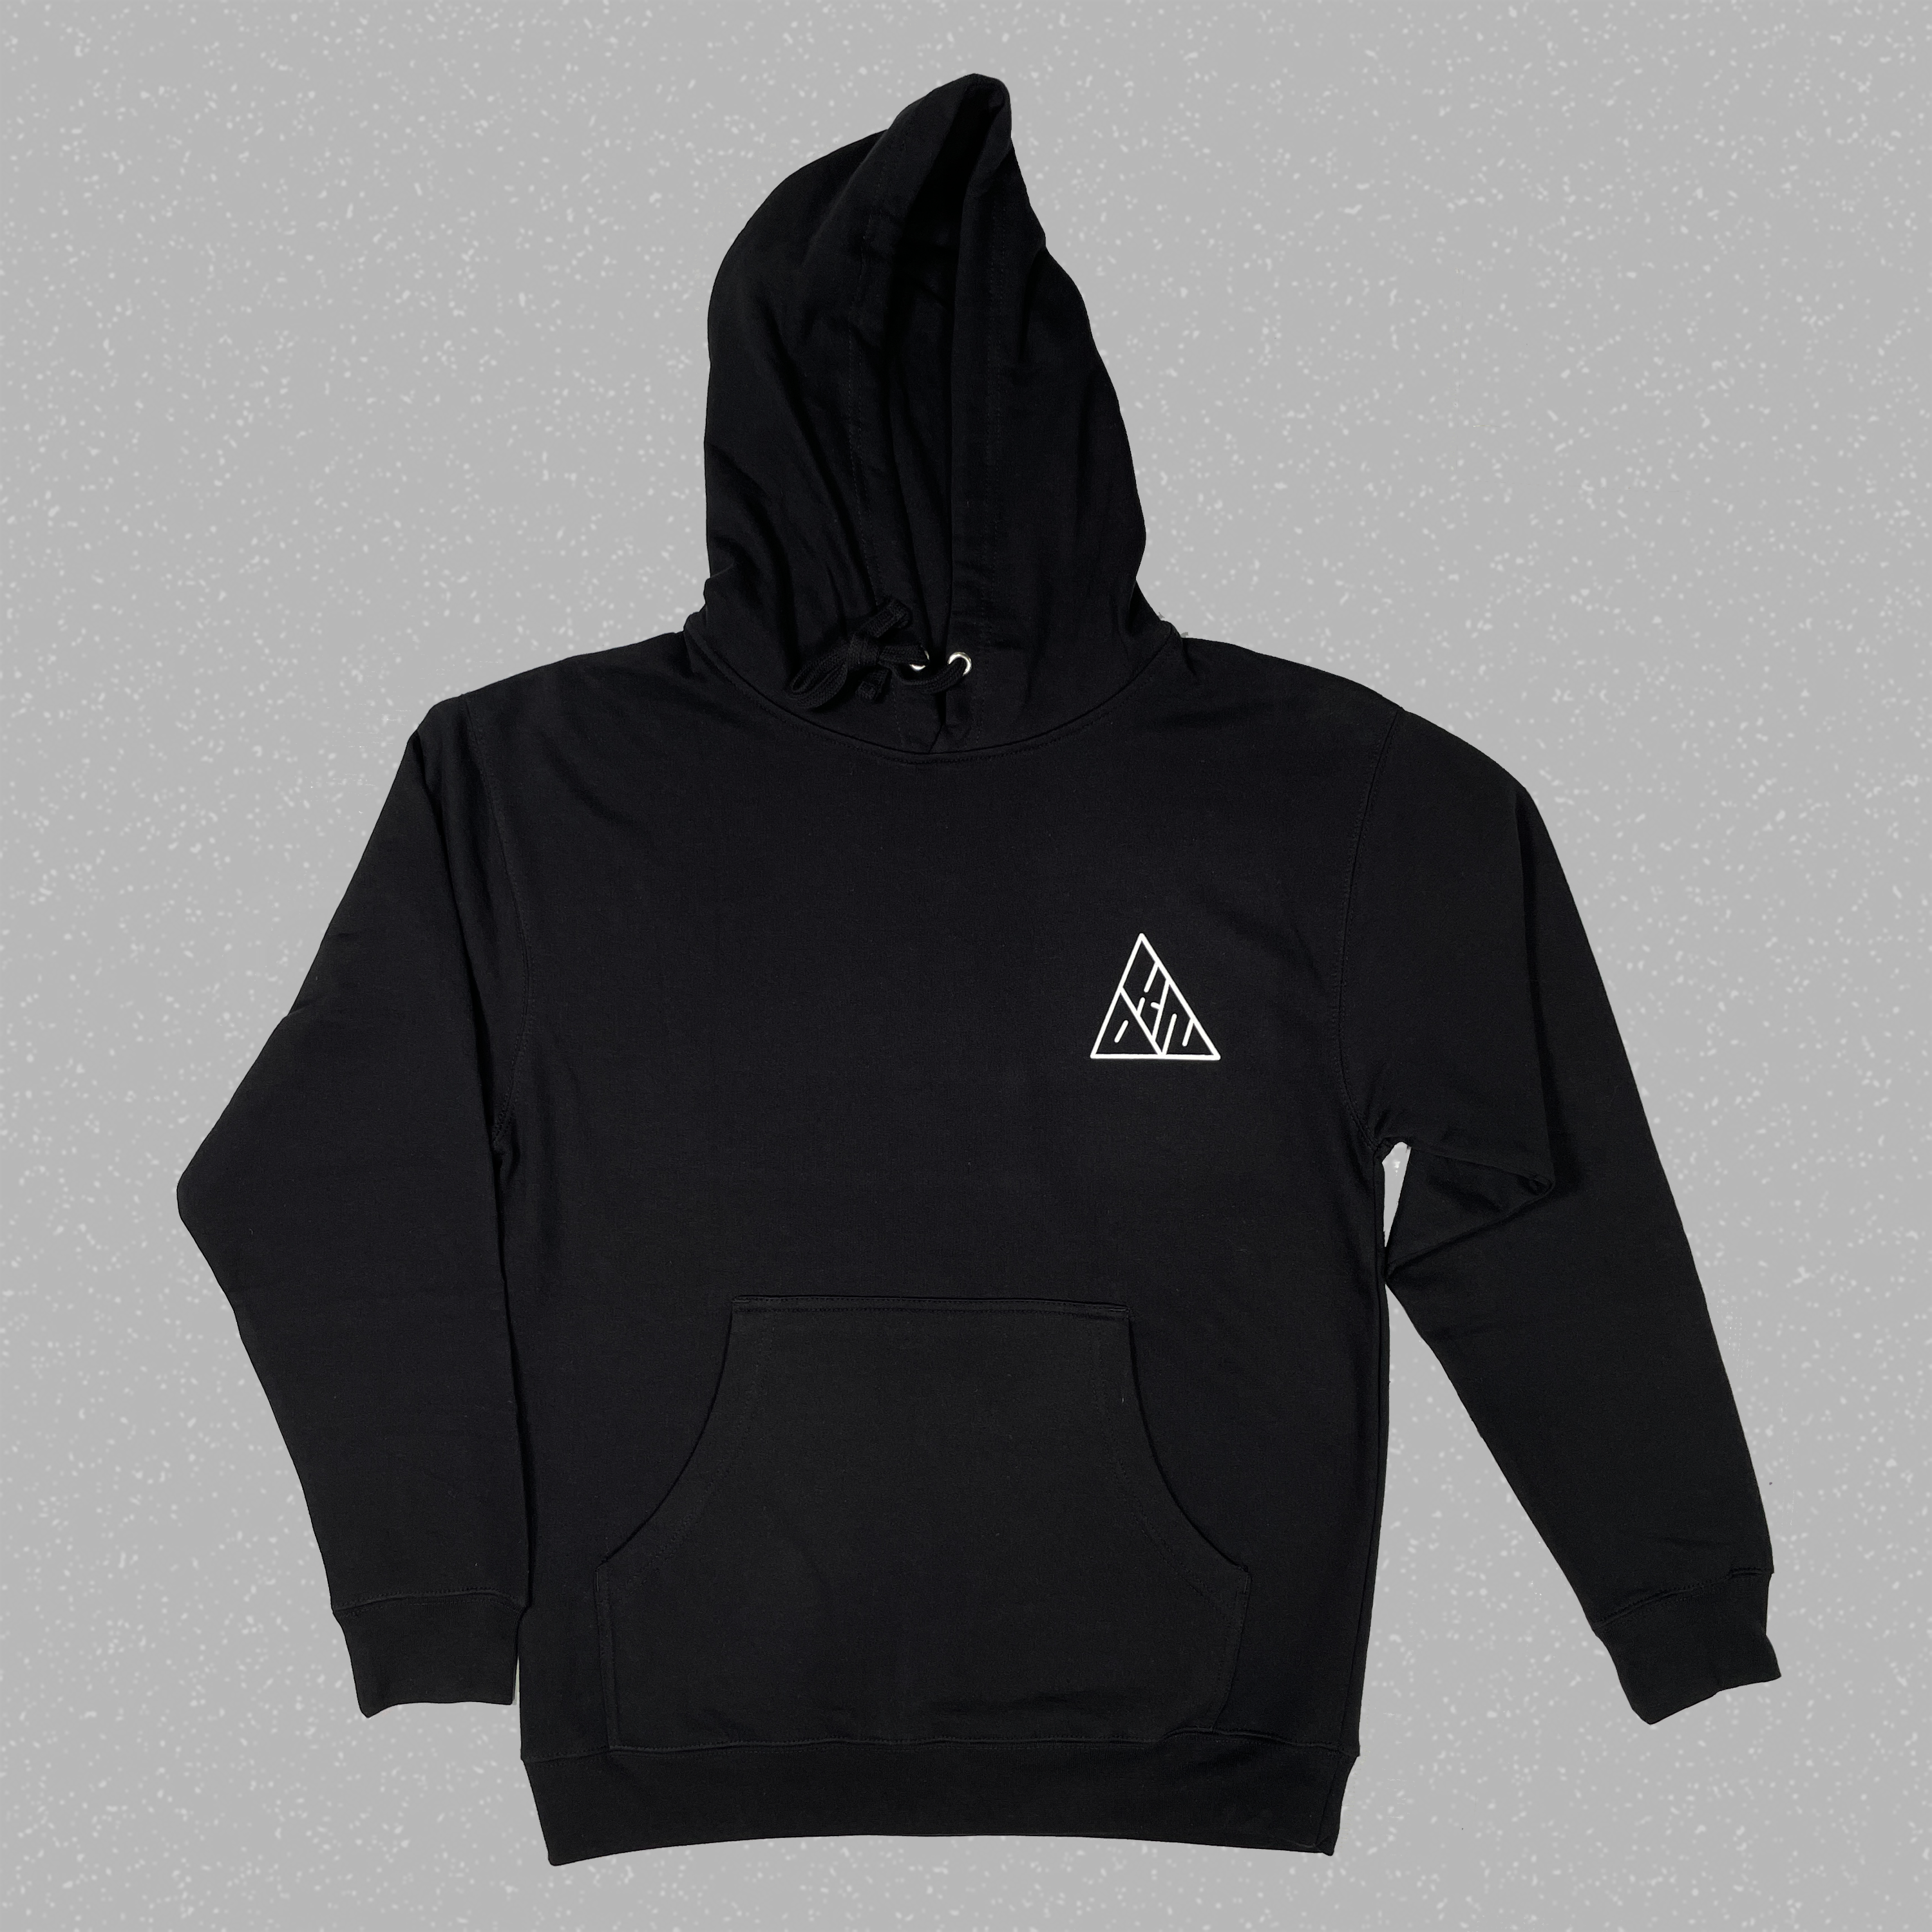 SALE - The Kindness Pyramid Hood Sweatshirt Black